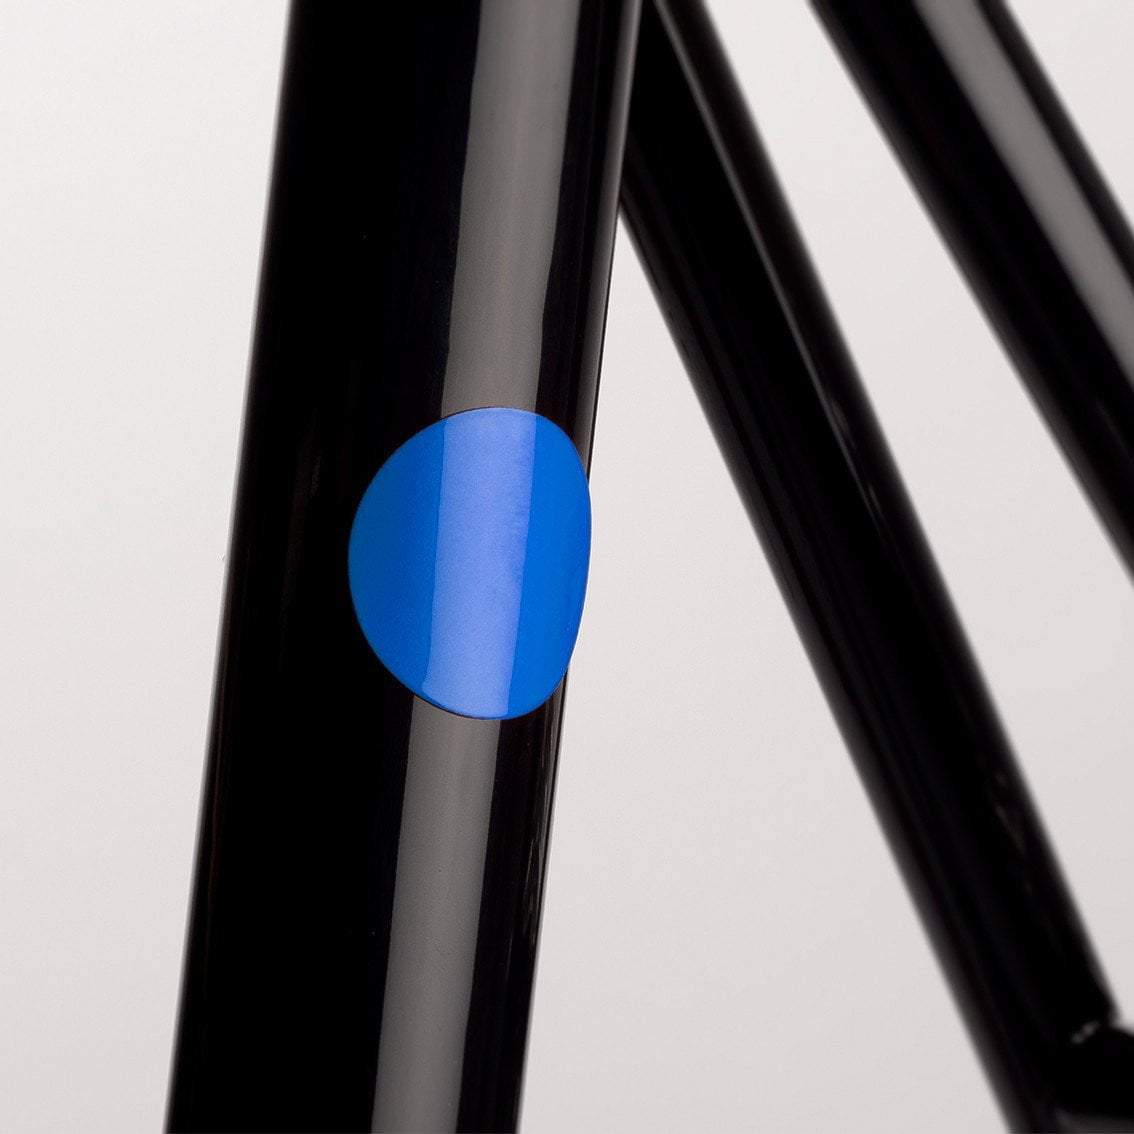 Bookman termék Bookman Magnetic Reflectors - Blue